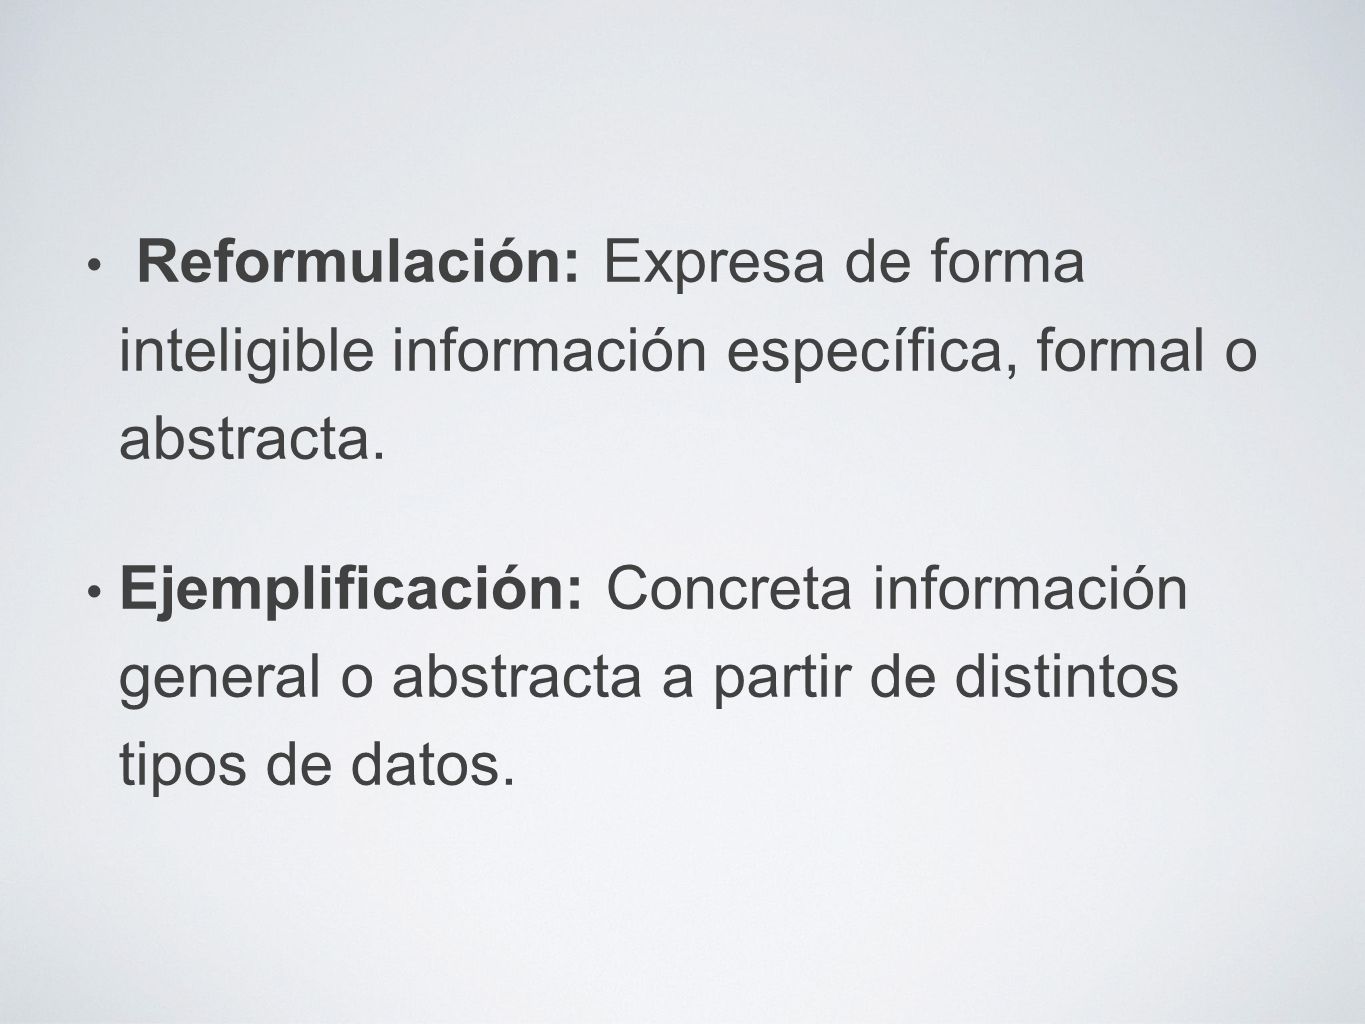 Reformulación: Expresa de forma inteligible información específica, formal o abstracta.